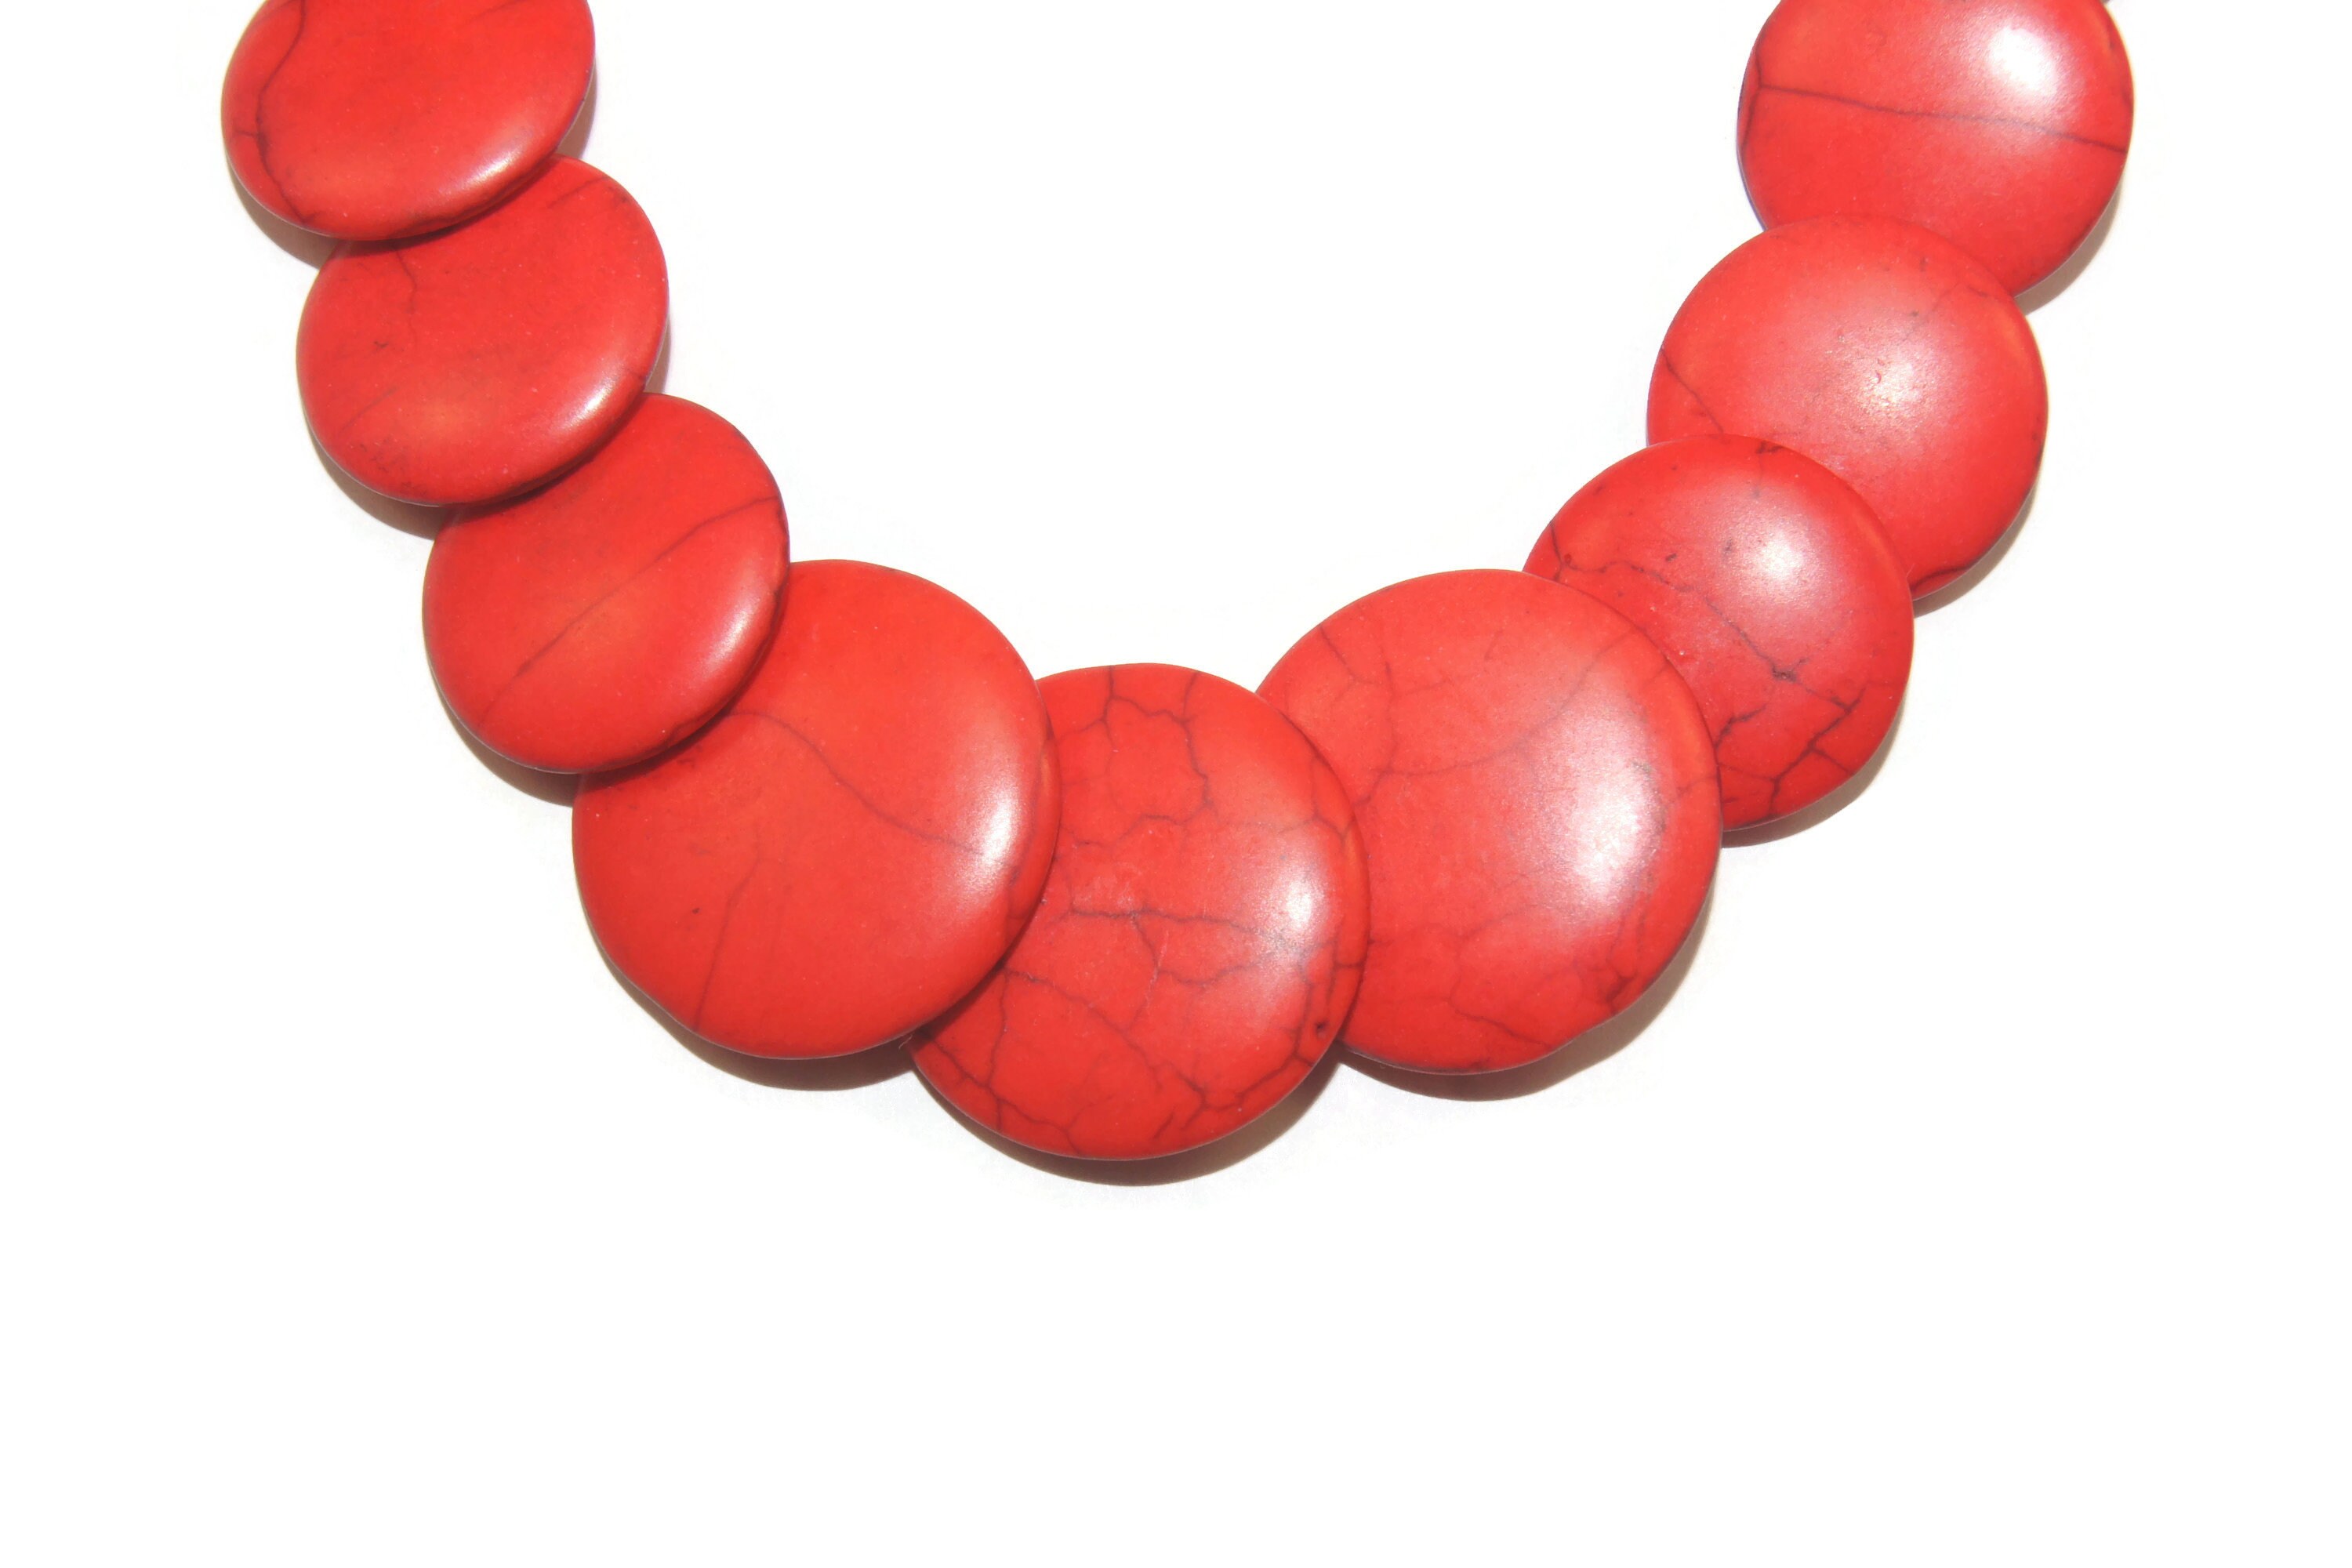 w881-w2.5 18" gradual  red Howlite  flat bead necklace/ 